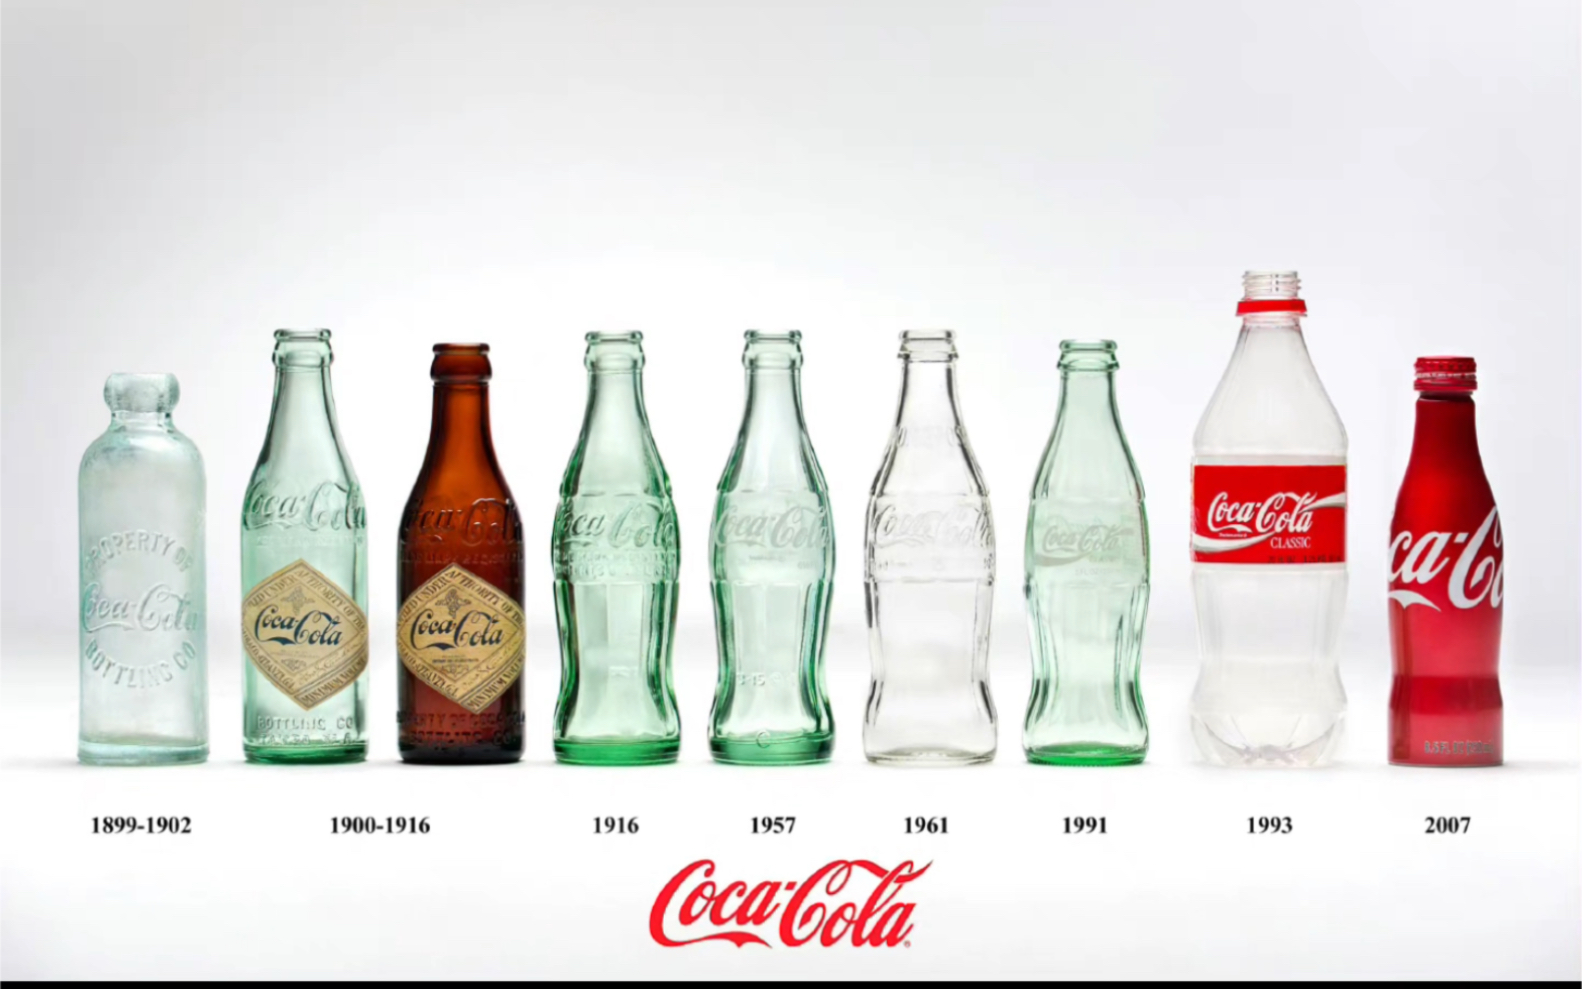 全网首发一瓶清朝末年1907年可口可乐coca cola琥珀色BOTTLE STRAIGHT直筒瓶。可口可乐商业化第一款玻璃浮雕瓶。